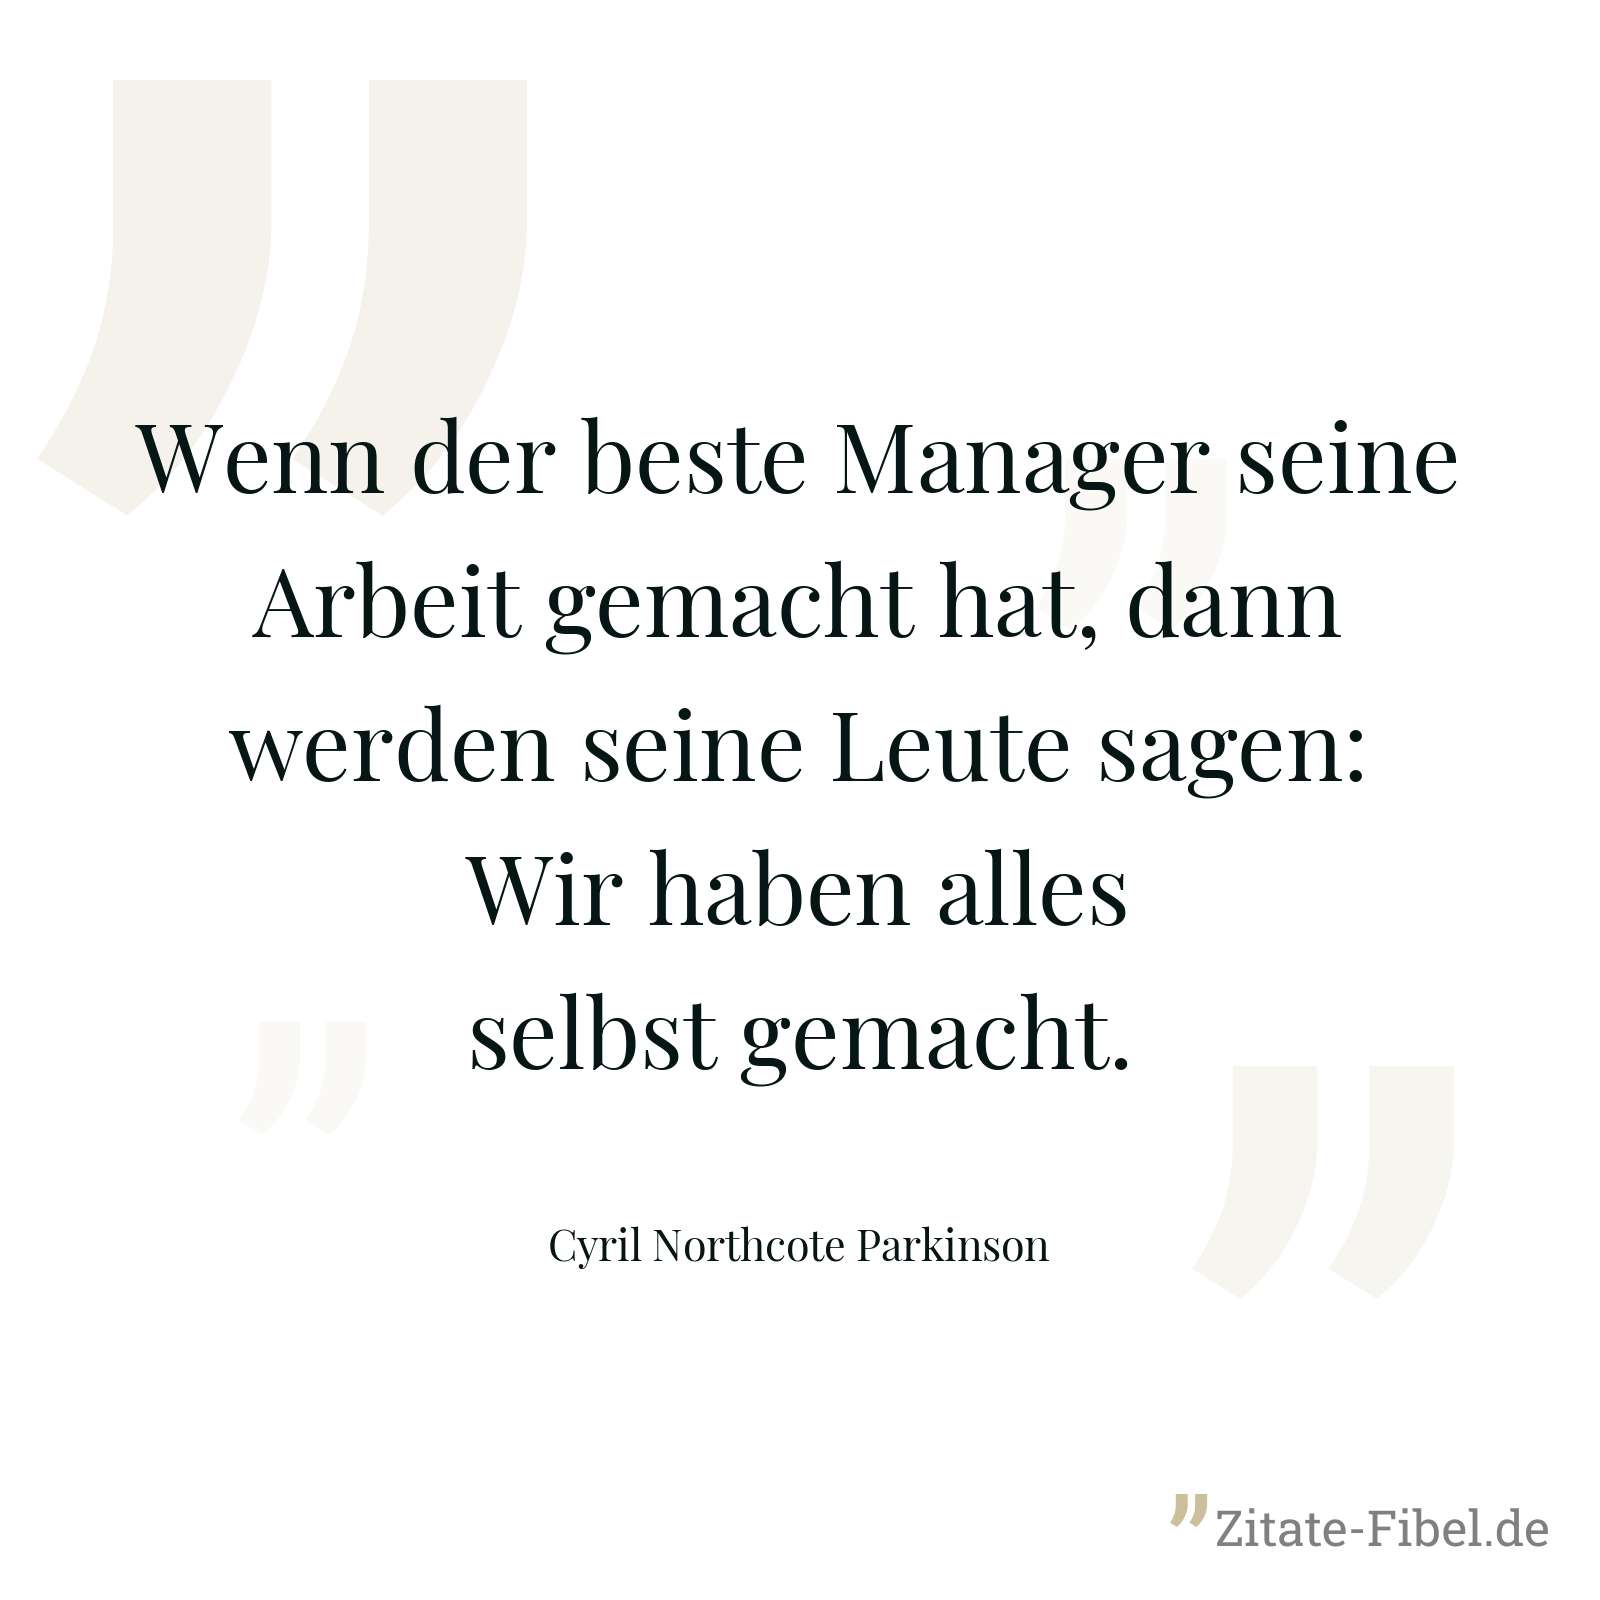 Wenn der beste Manager seine Arbeit gemacht hat, dann werden seine Leute sagen: Wir haben alles selbst gemacht. - Cyril Northcote Parkinson